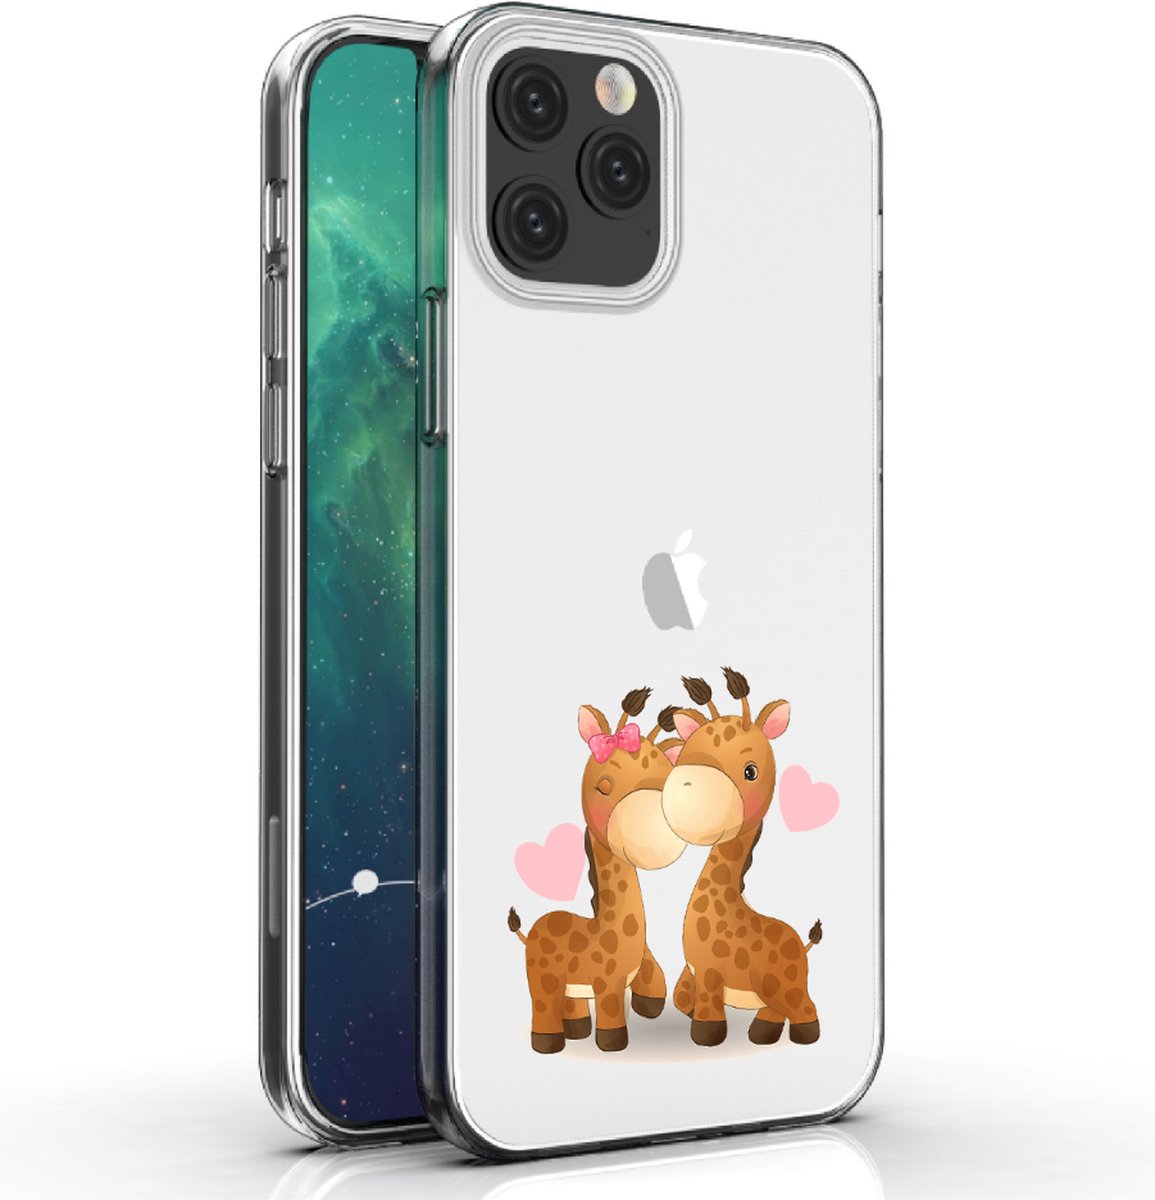 Apple Iphone 12 Mini telefoonhoesje transparant siliconen hoesje - Giraffen